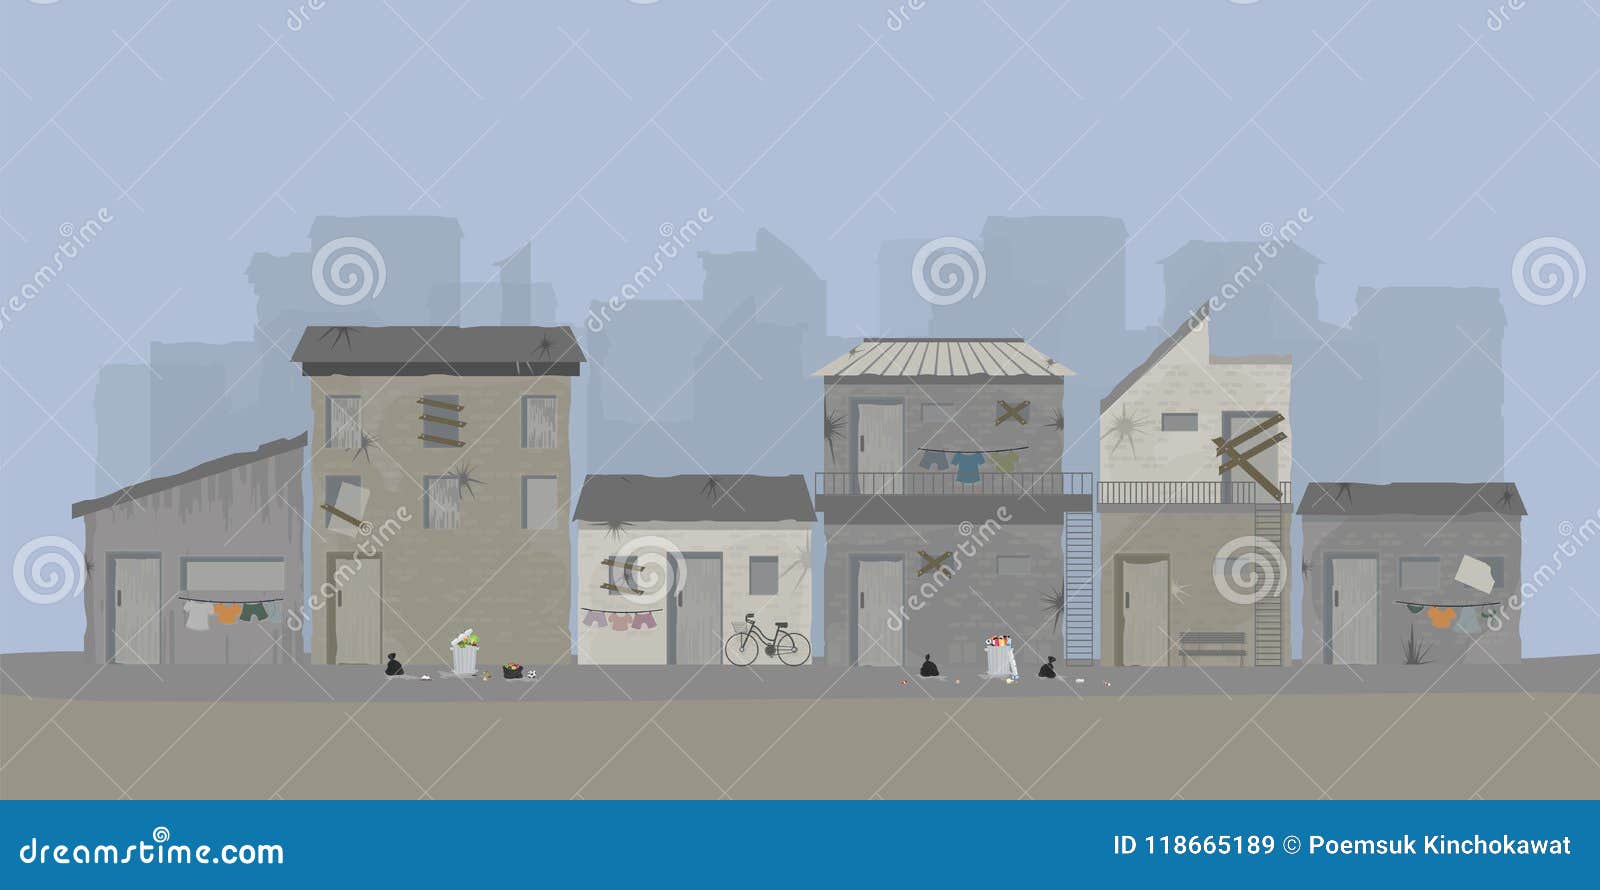 landscape of slum city or old town slum urban area.